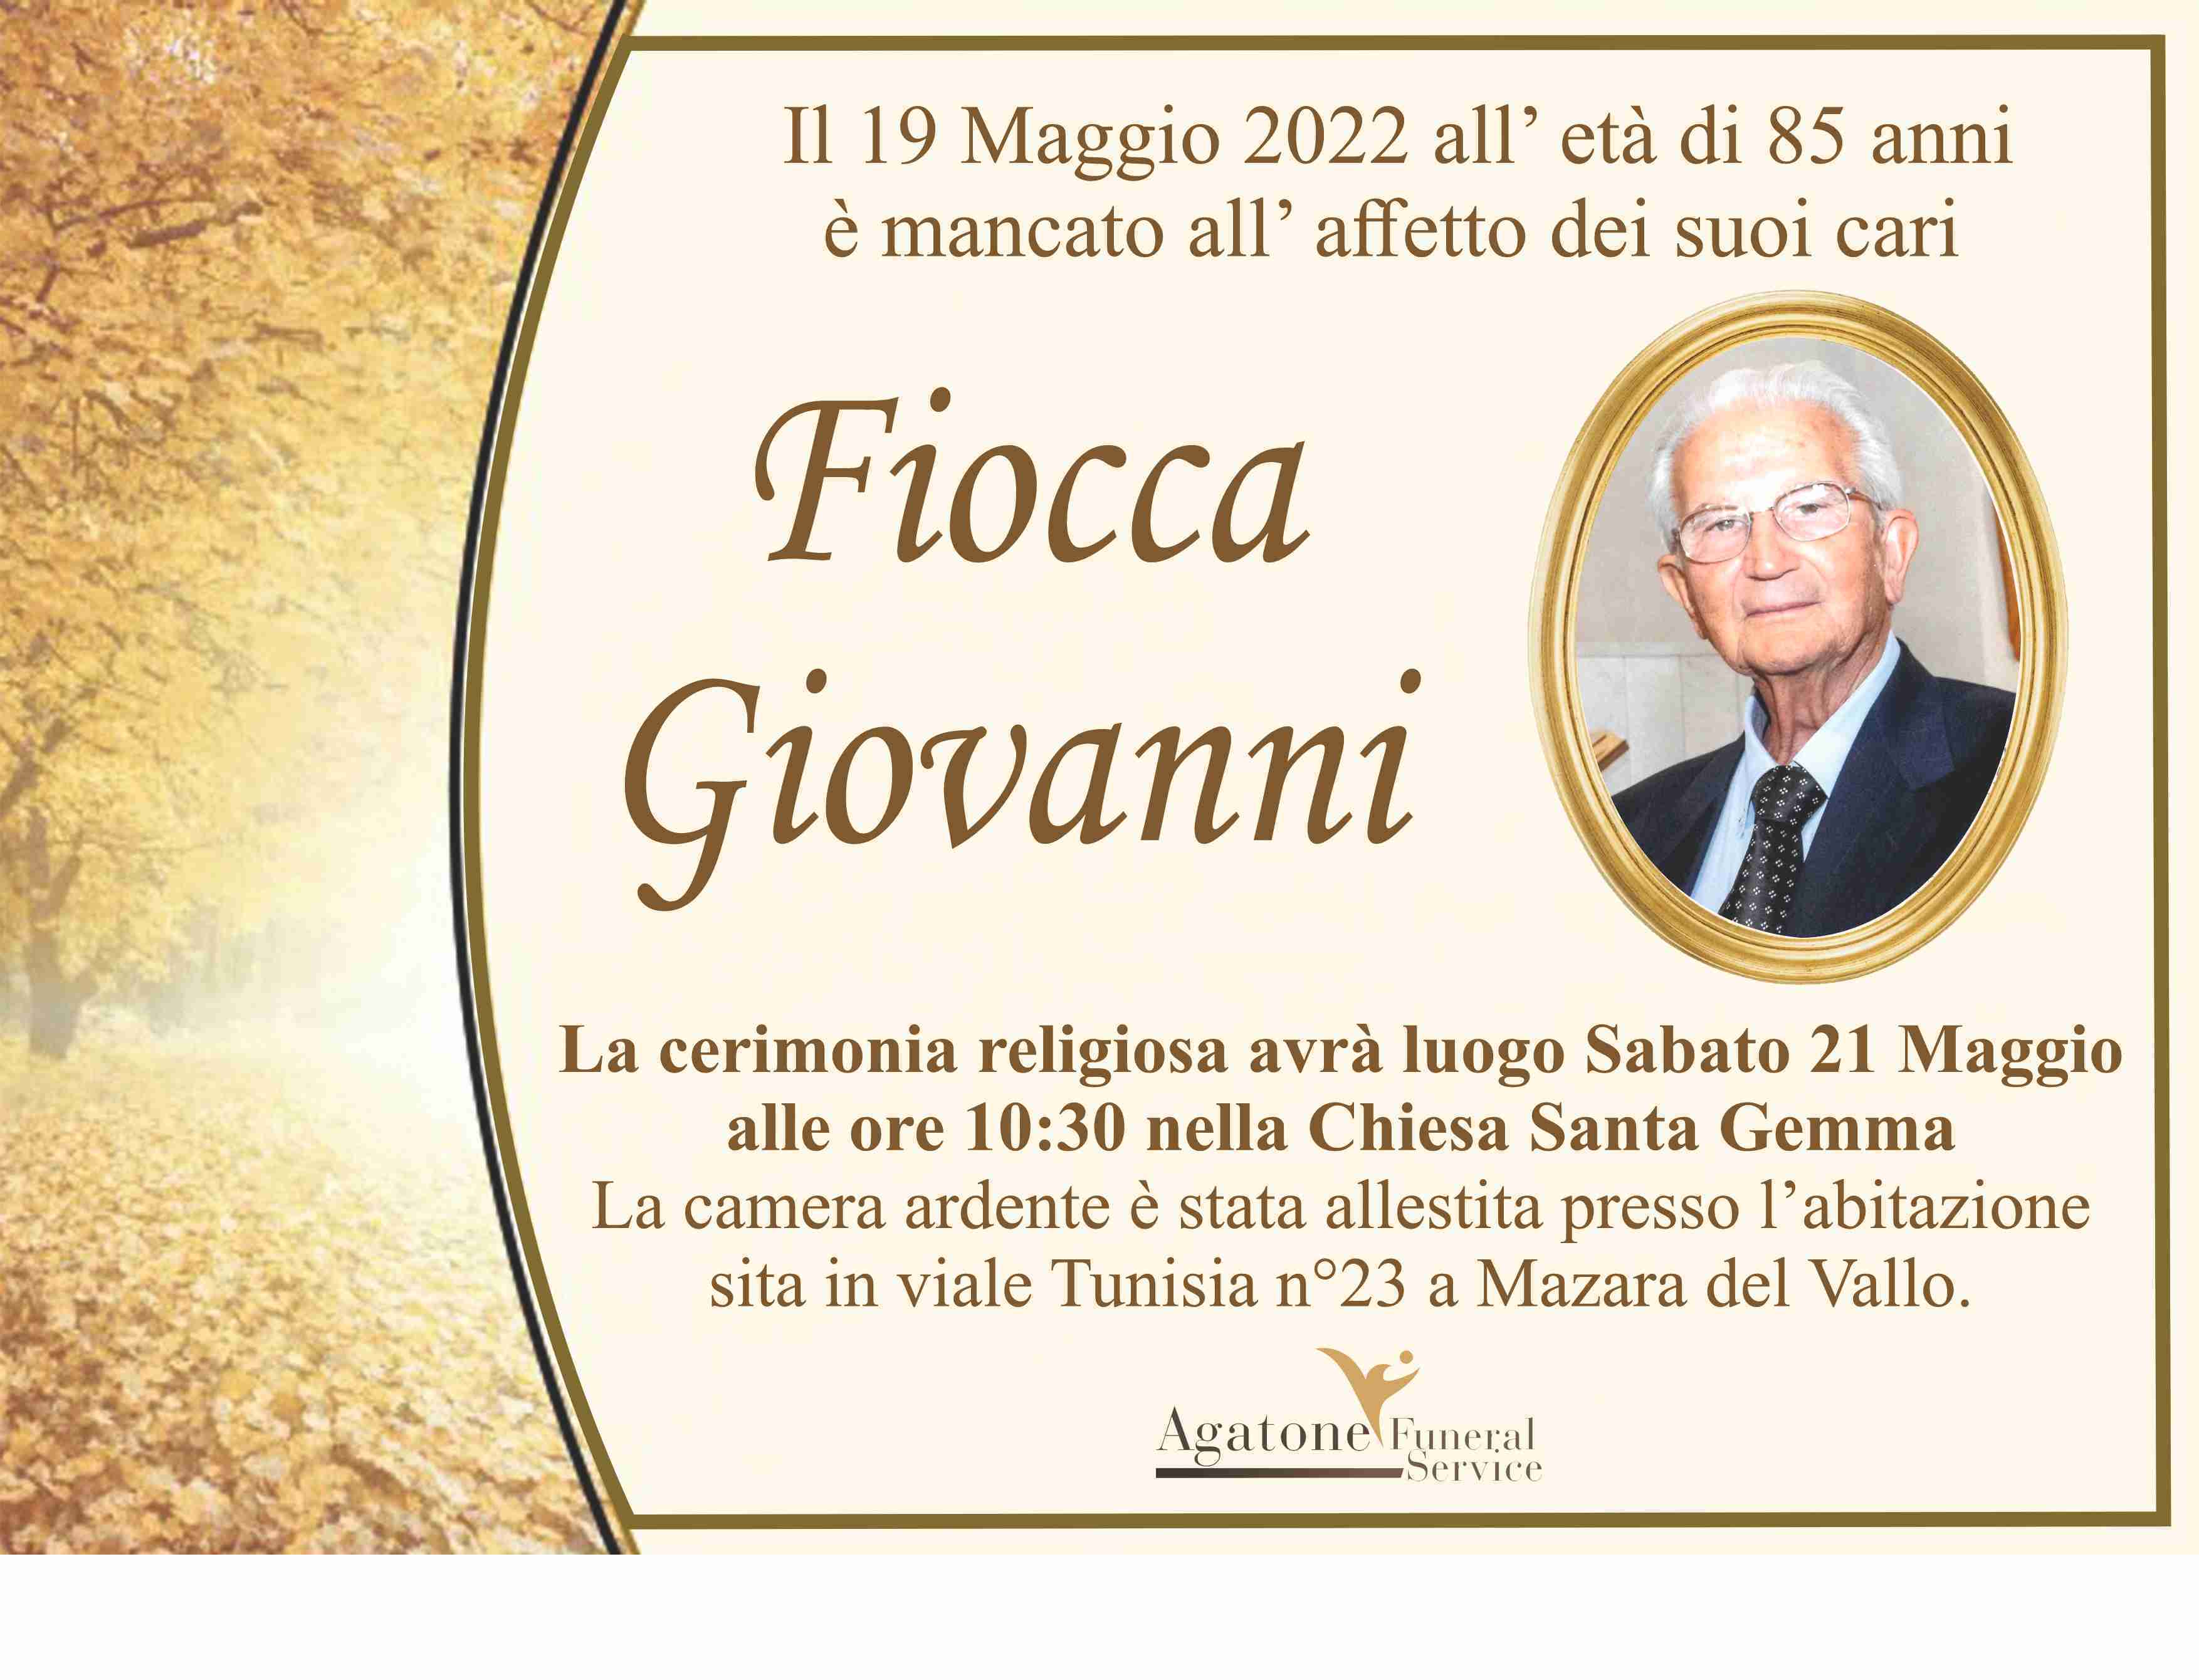 Giovanni Fiocca